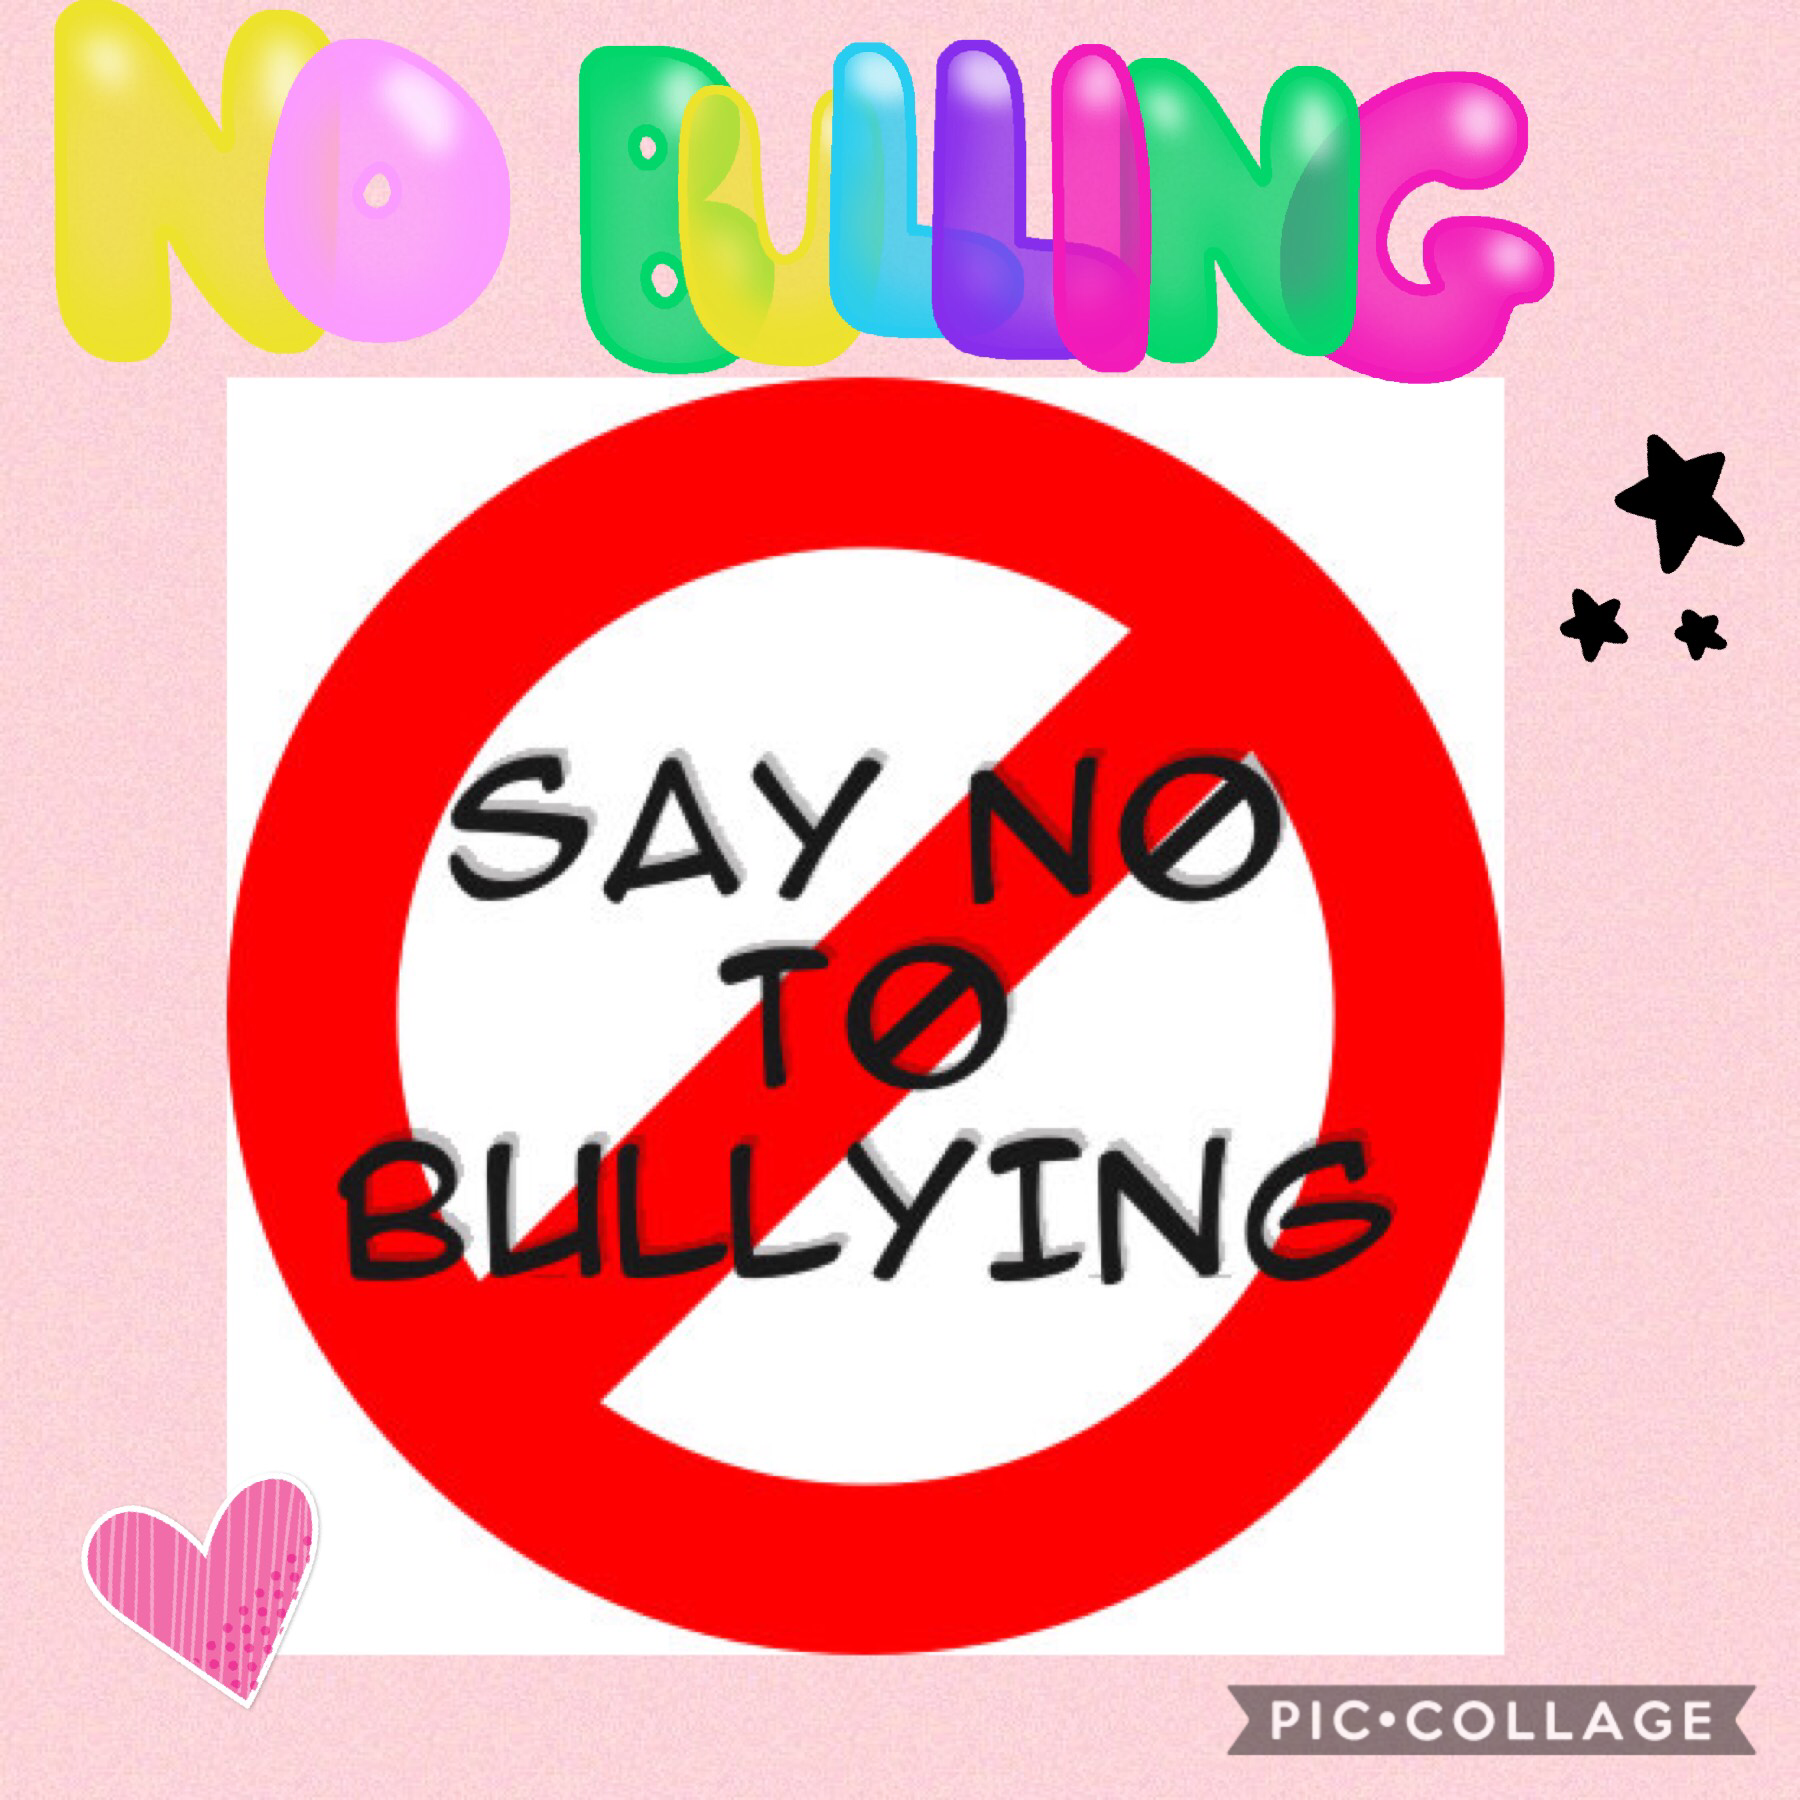 No bulling!!!!!!!!!!!! 😲